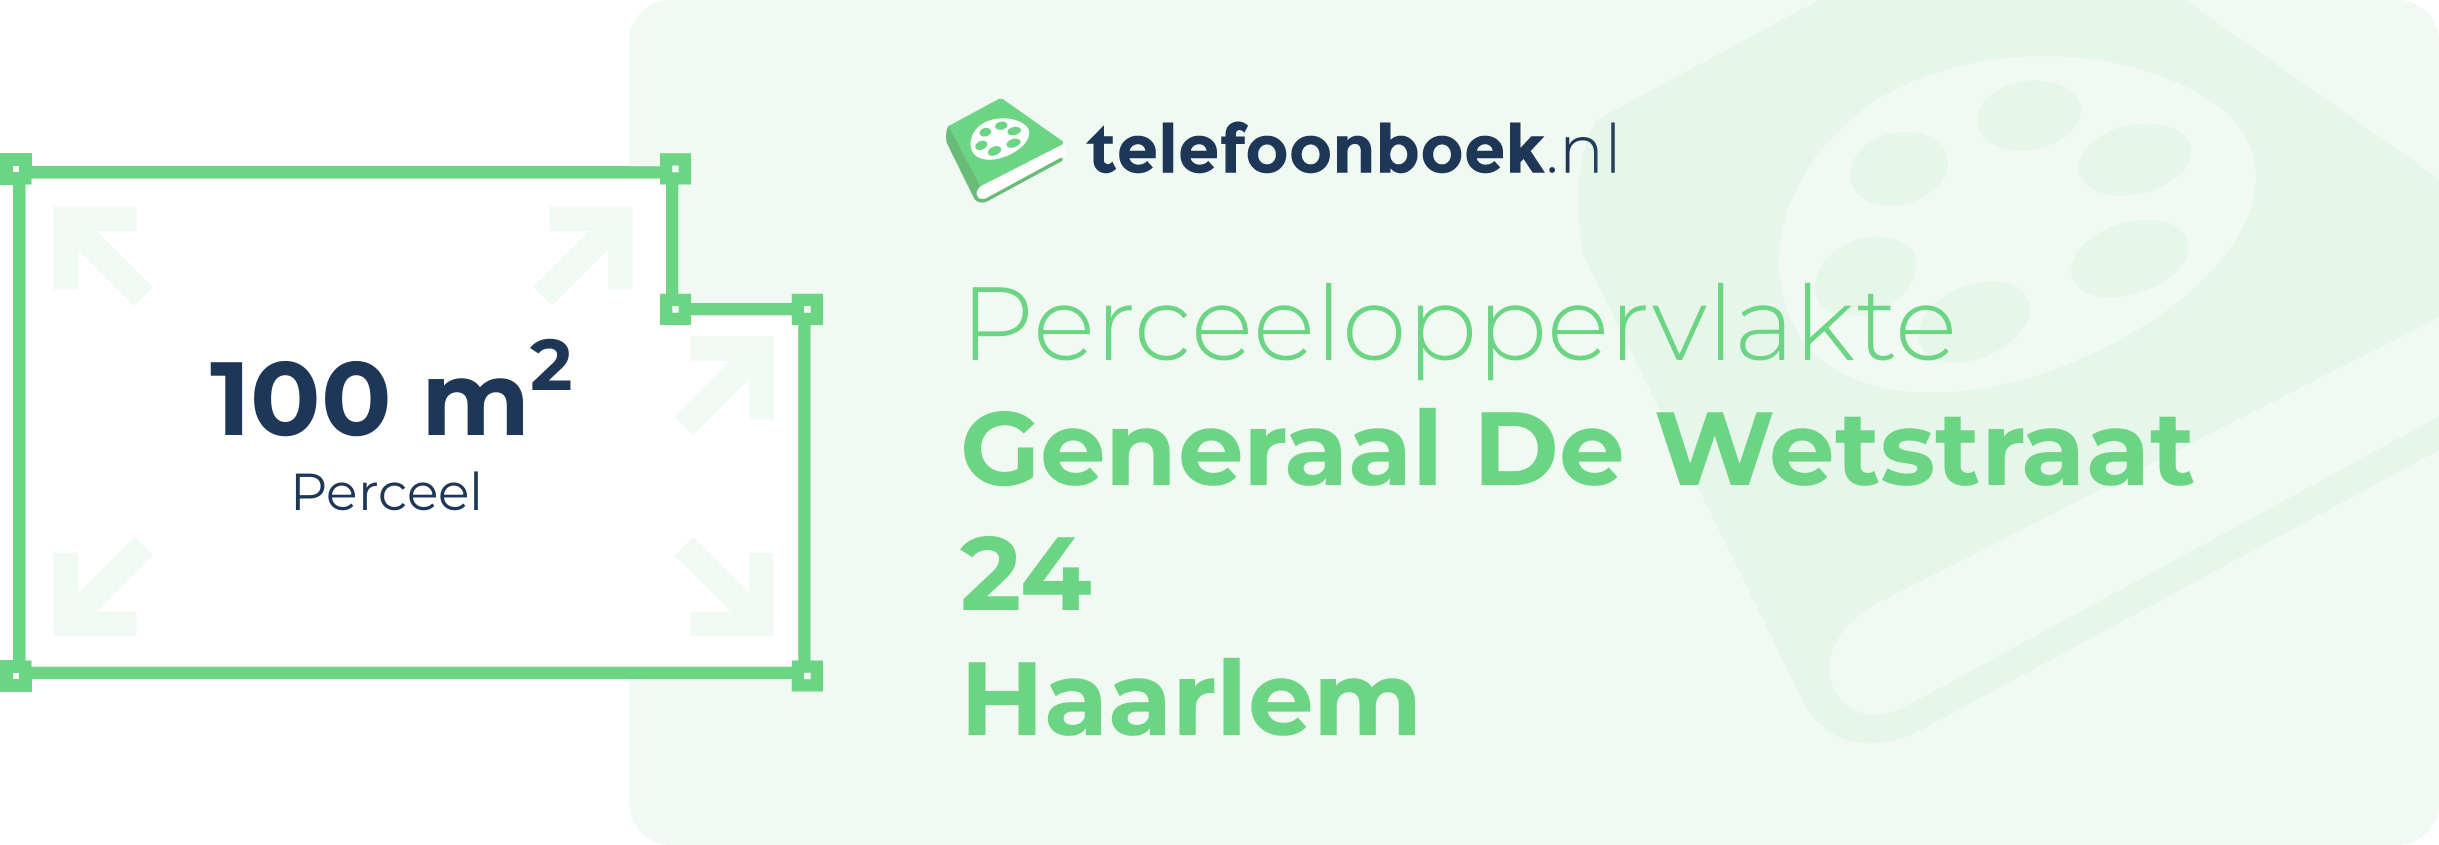 Perceeloppervlakte Generaal De Wetstraat 24 Haarlem